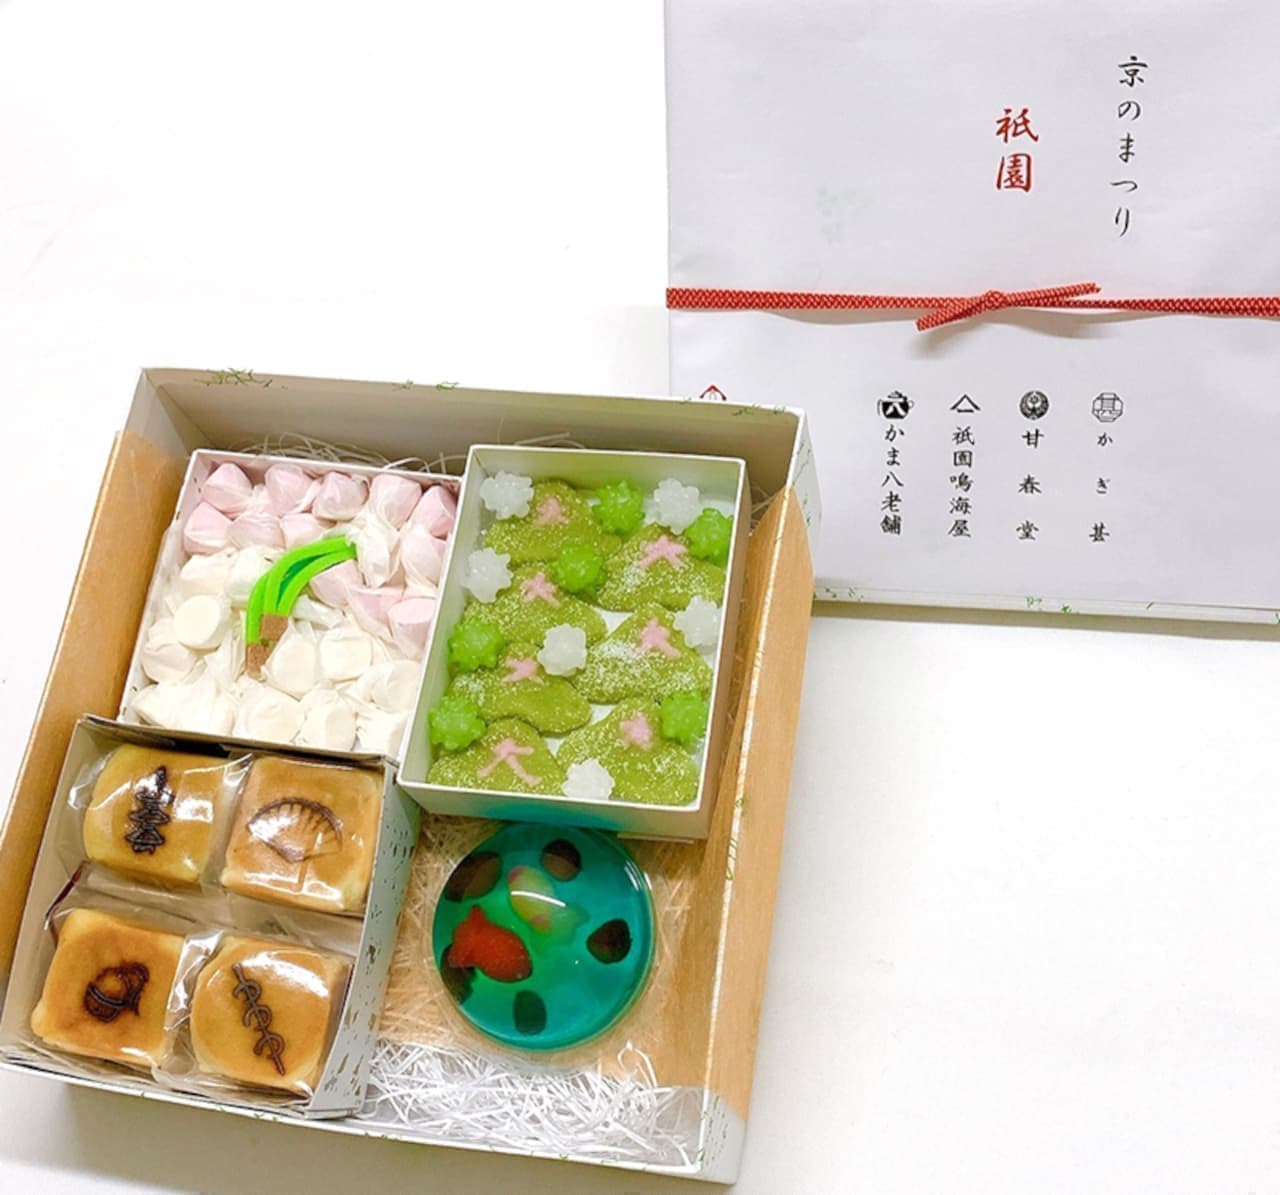 12社の和菓子詰め合わせ「京のまつり」